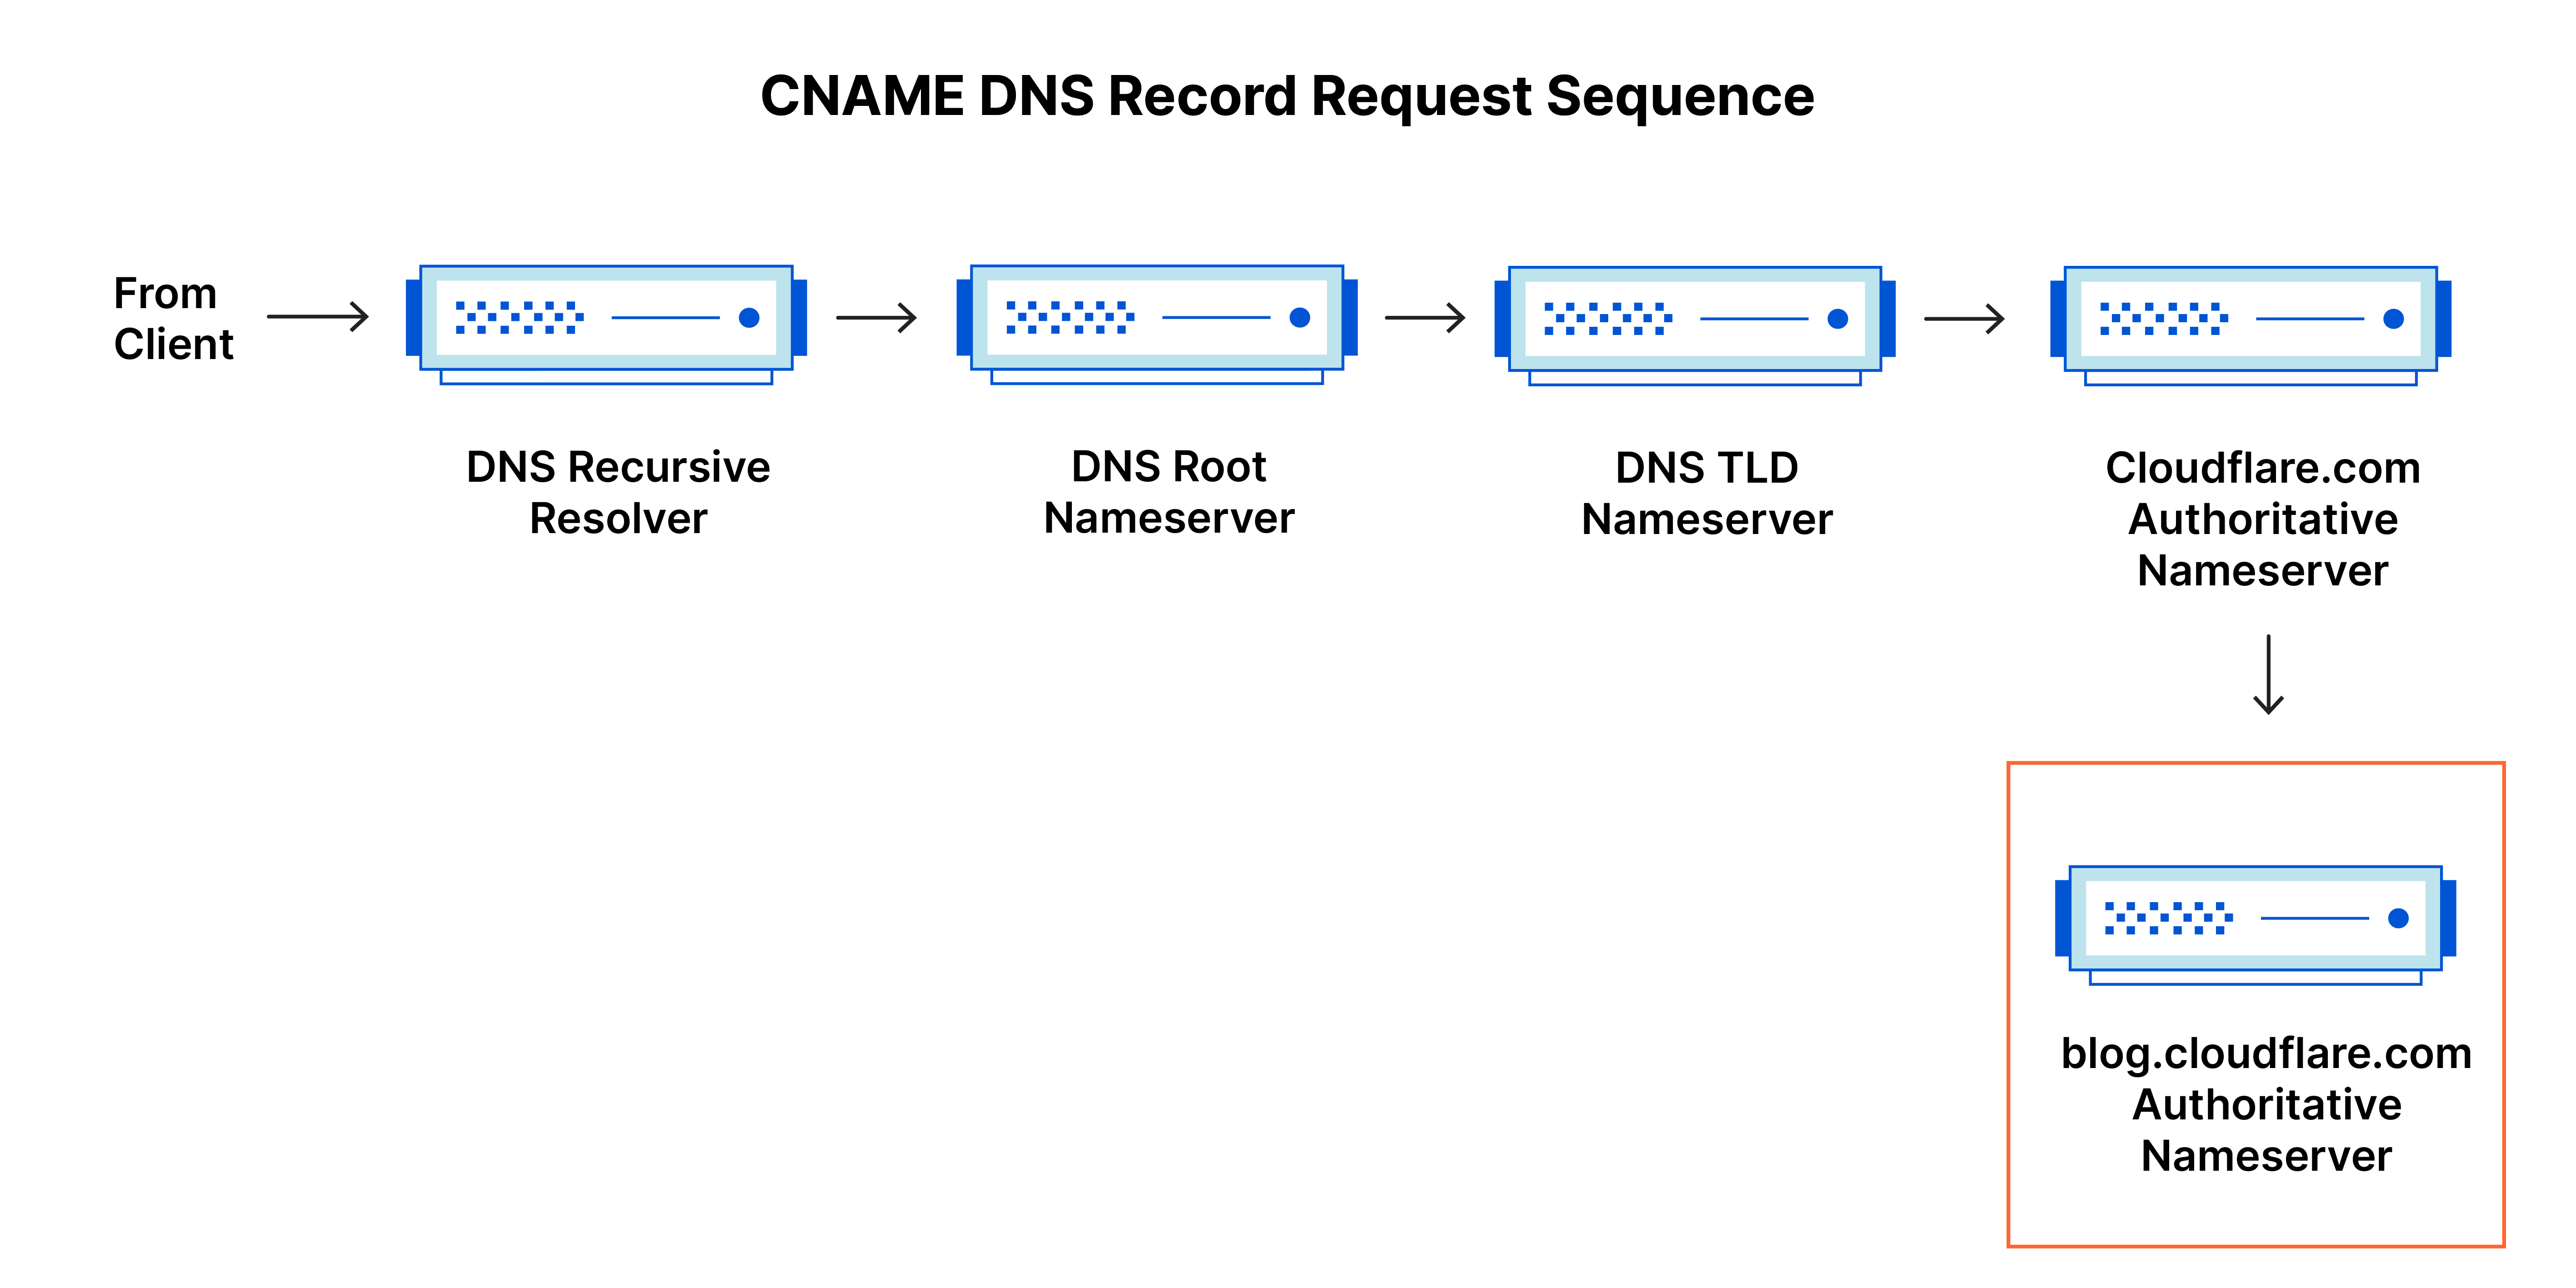 Sequência de solicitação de registro de DNS – Consulta de DNS para registro CNAME para o subdomínio blog.cloudflare.com